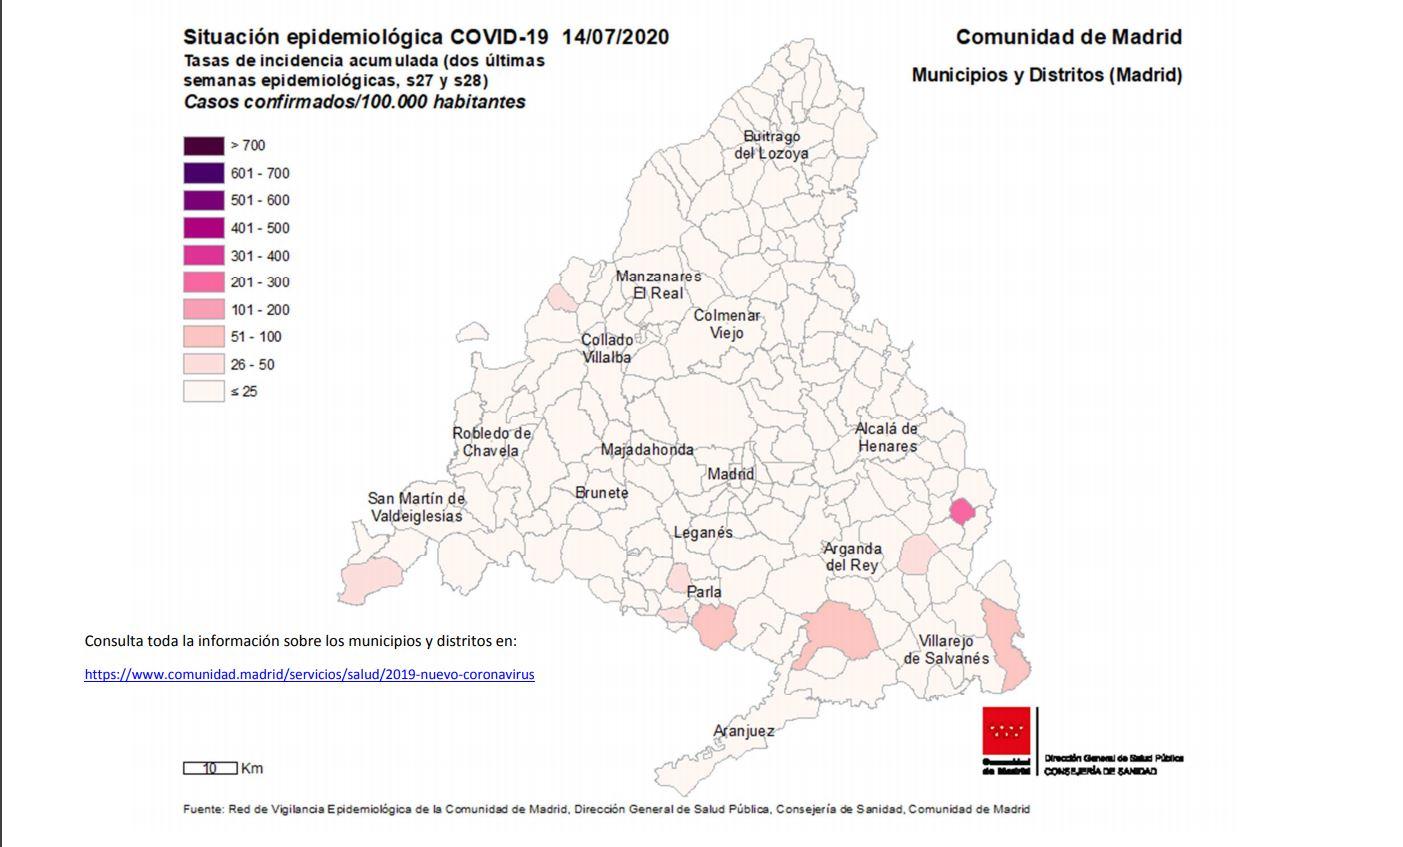 Mapa Comunidad de Madrid covid-19